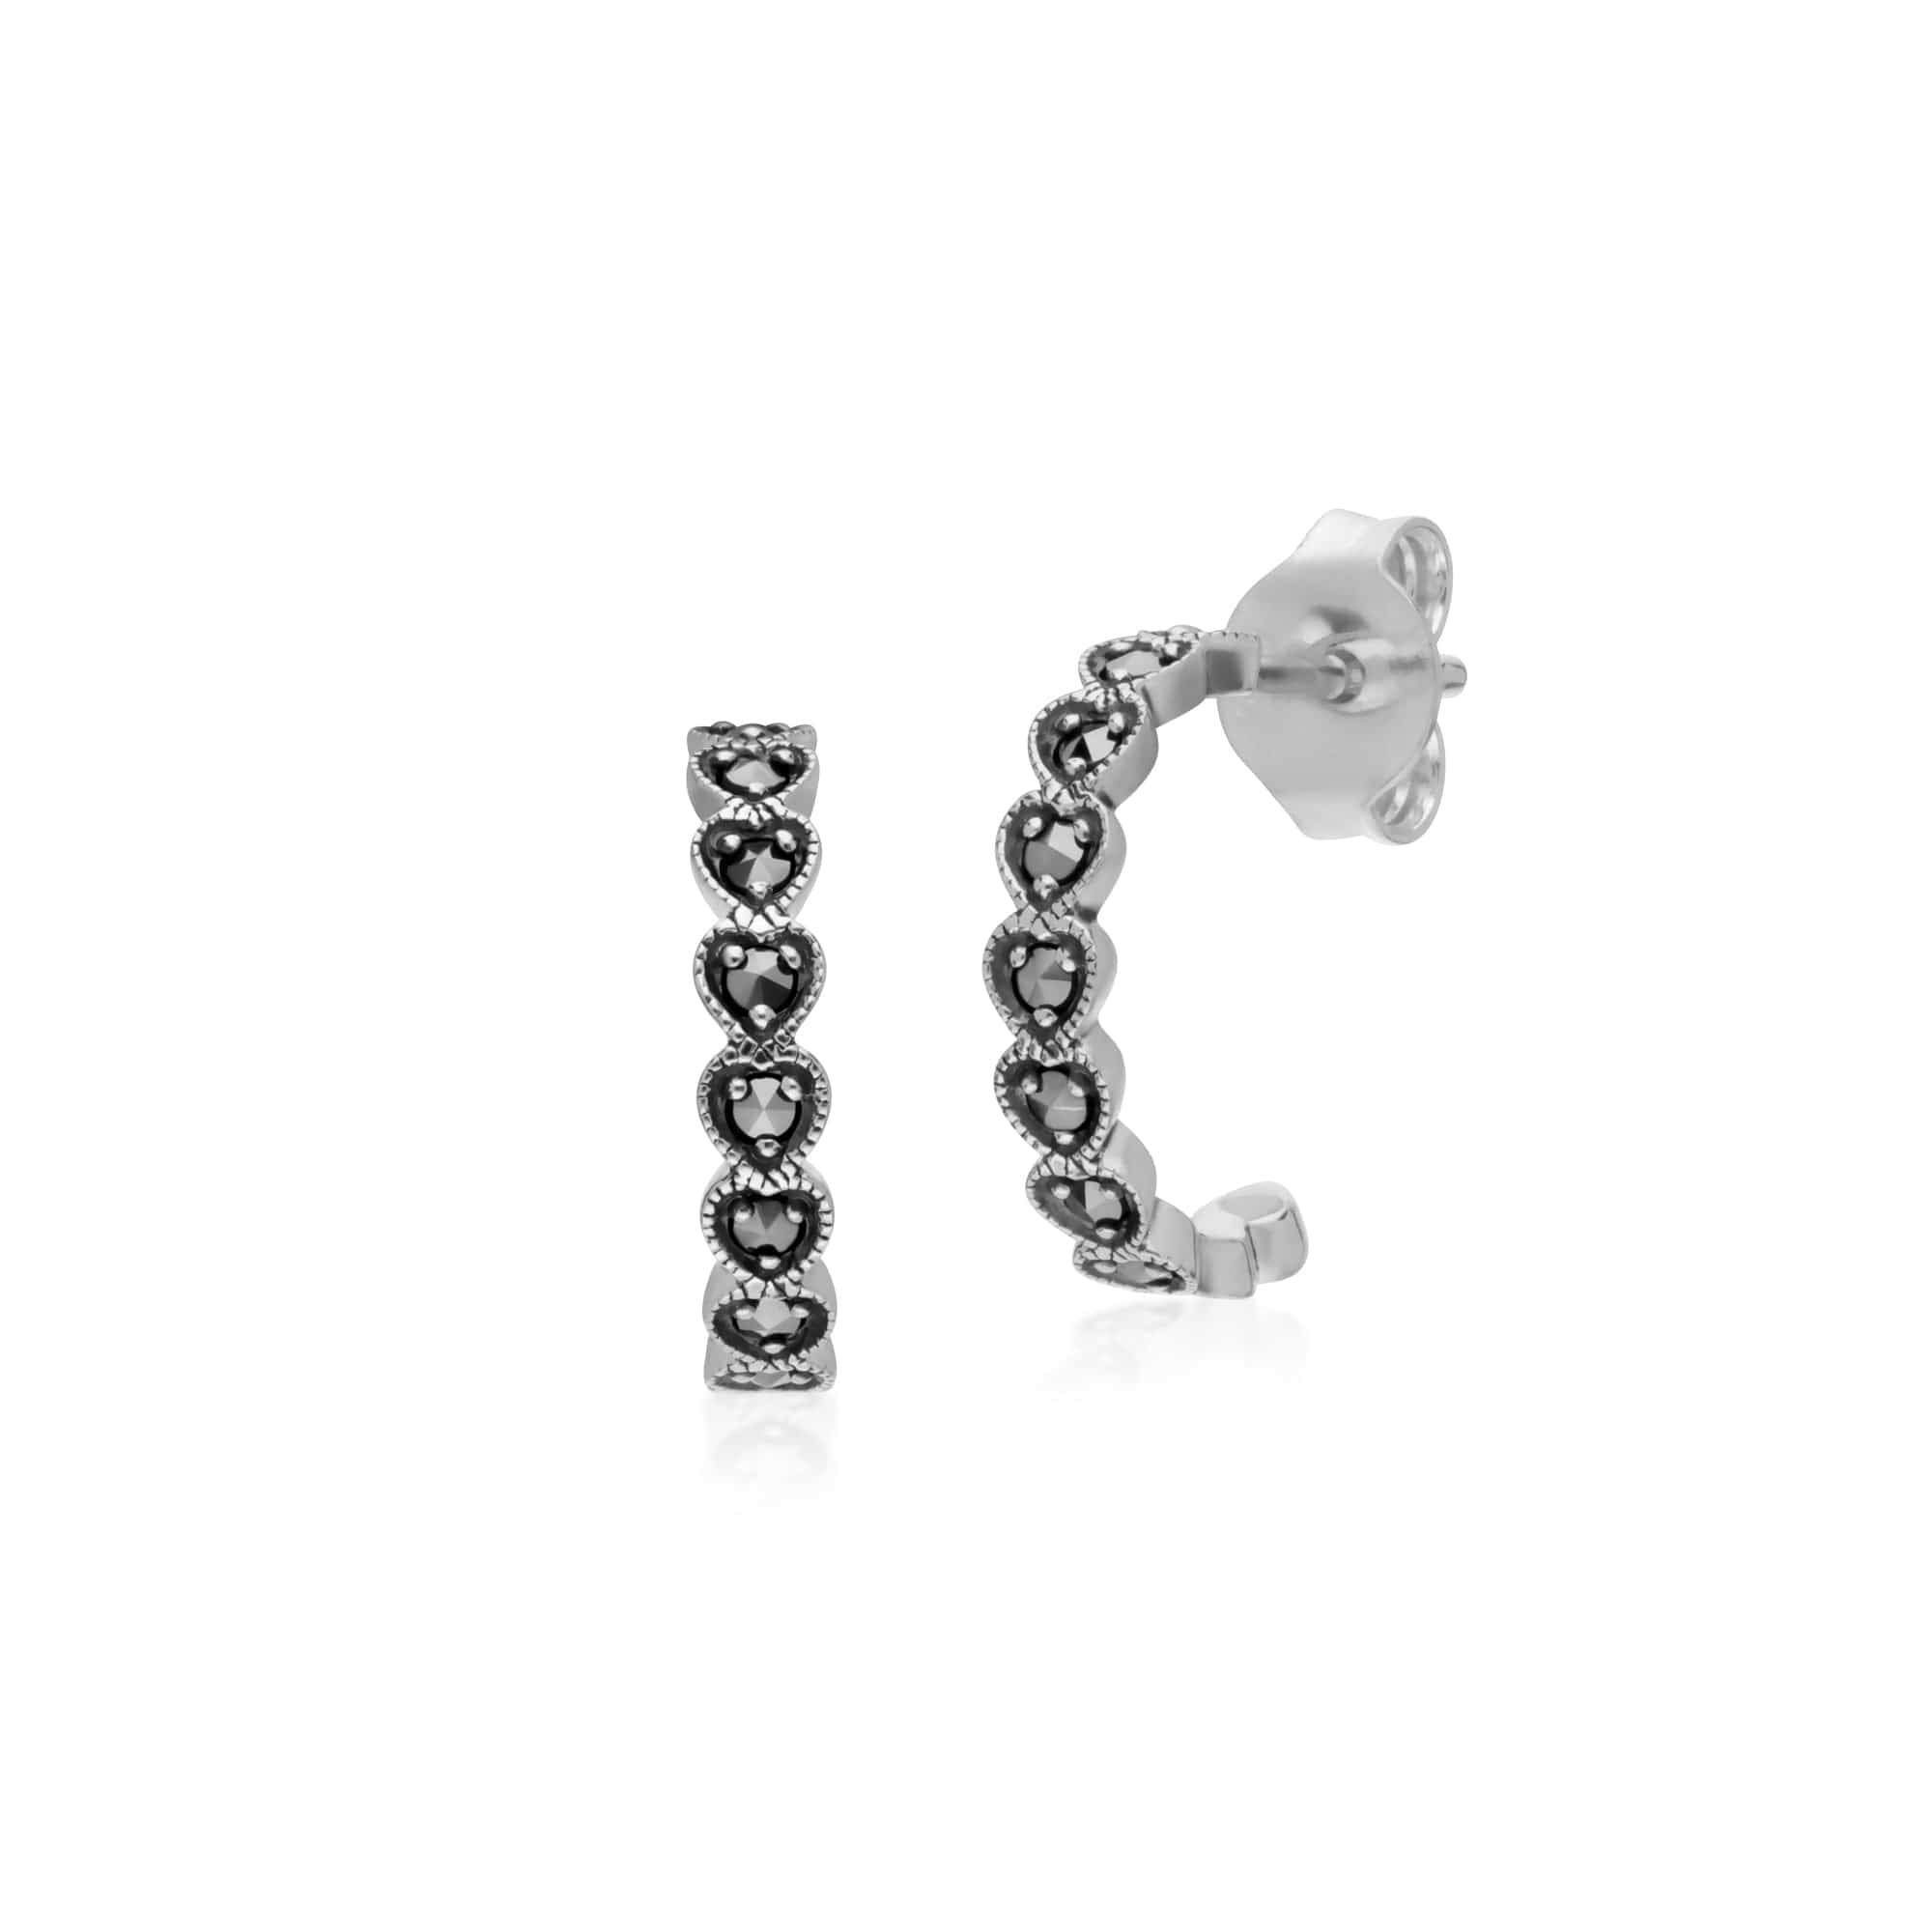 214E873401925 Geometric Heart Marcasite Half Hoop Earrings in 925 Sterling Silver 1